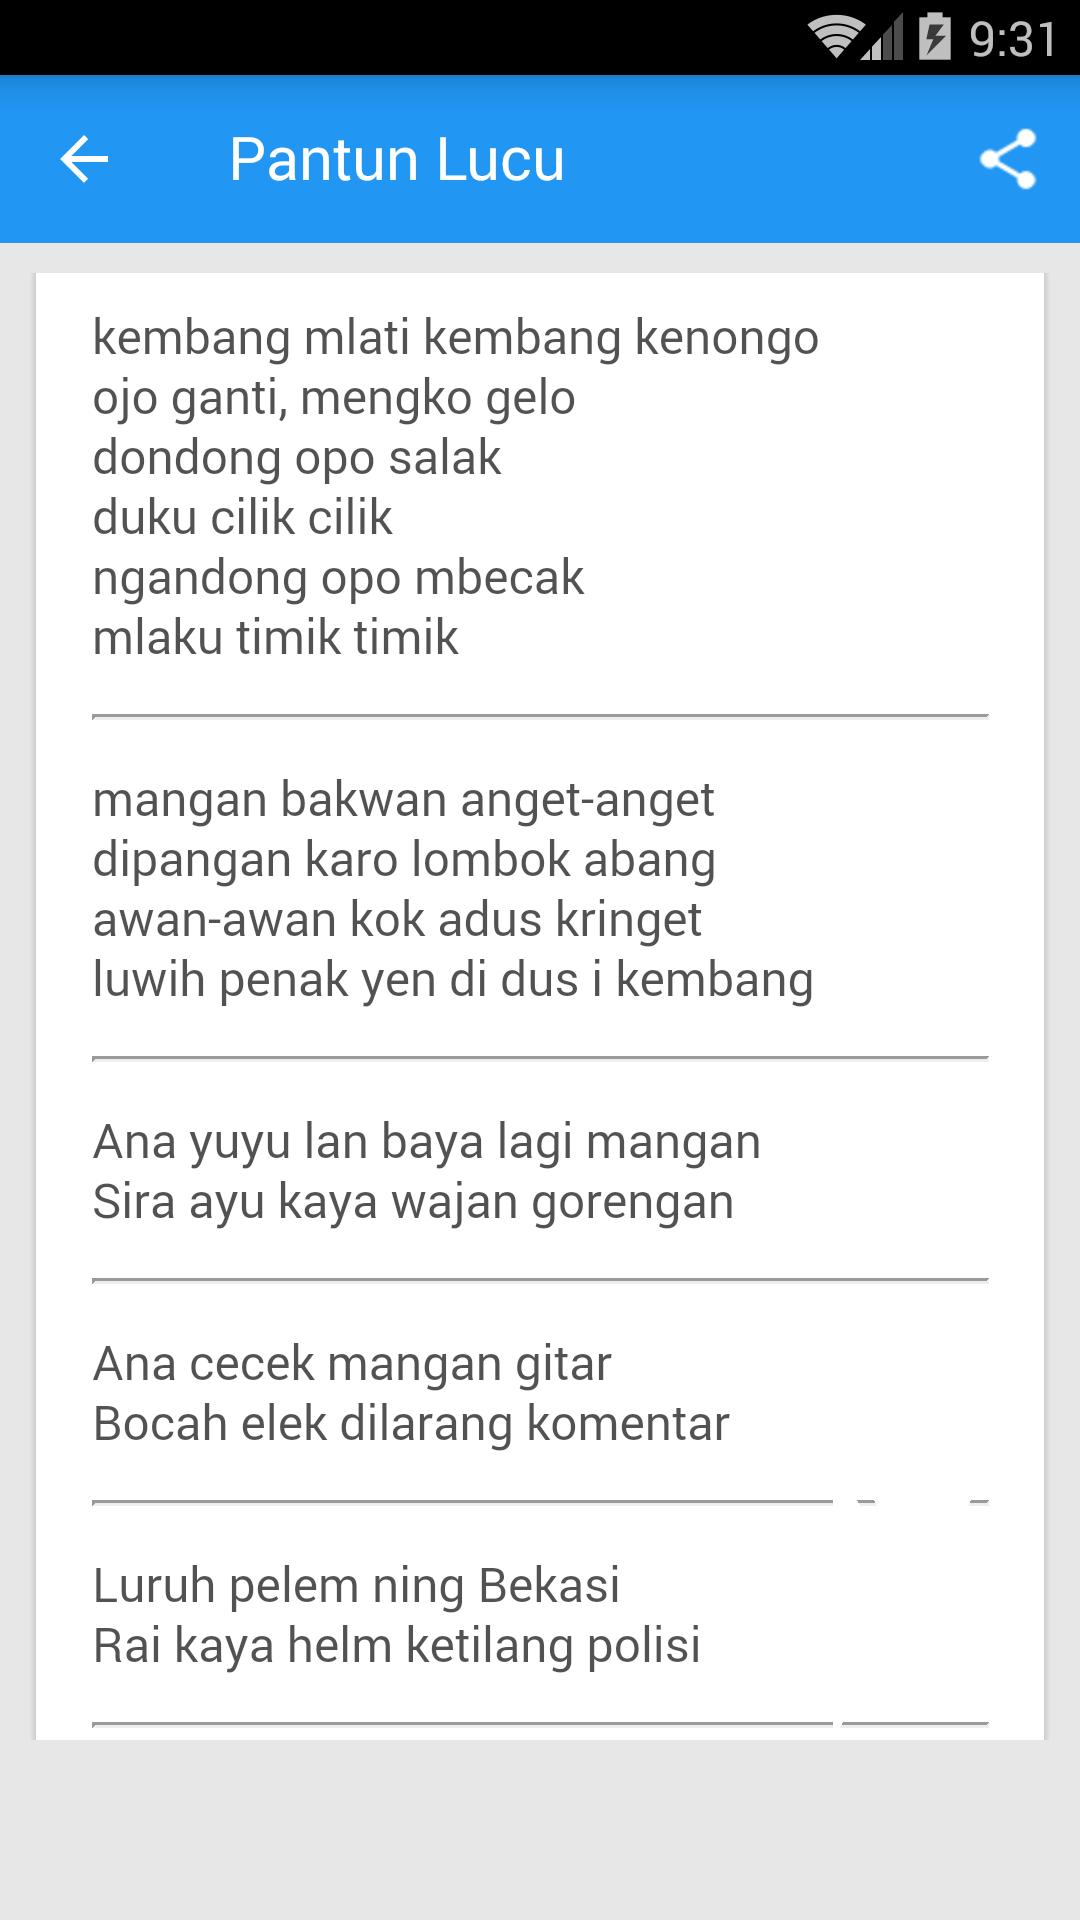 Pantun Lucu Bahasa Jawa For Android Apk Download